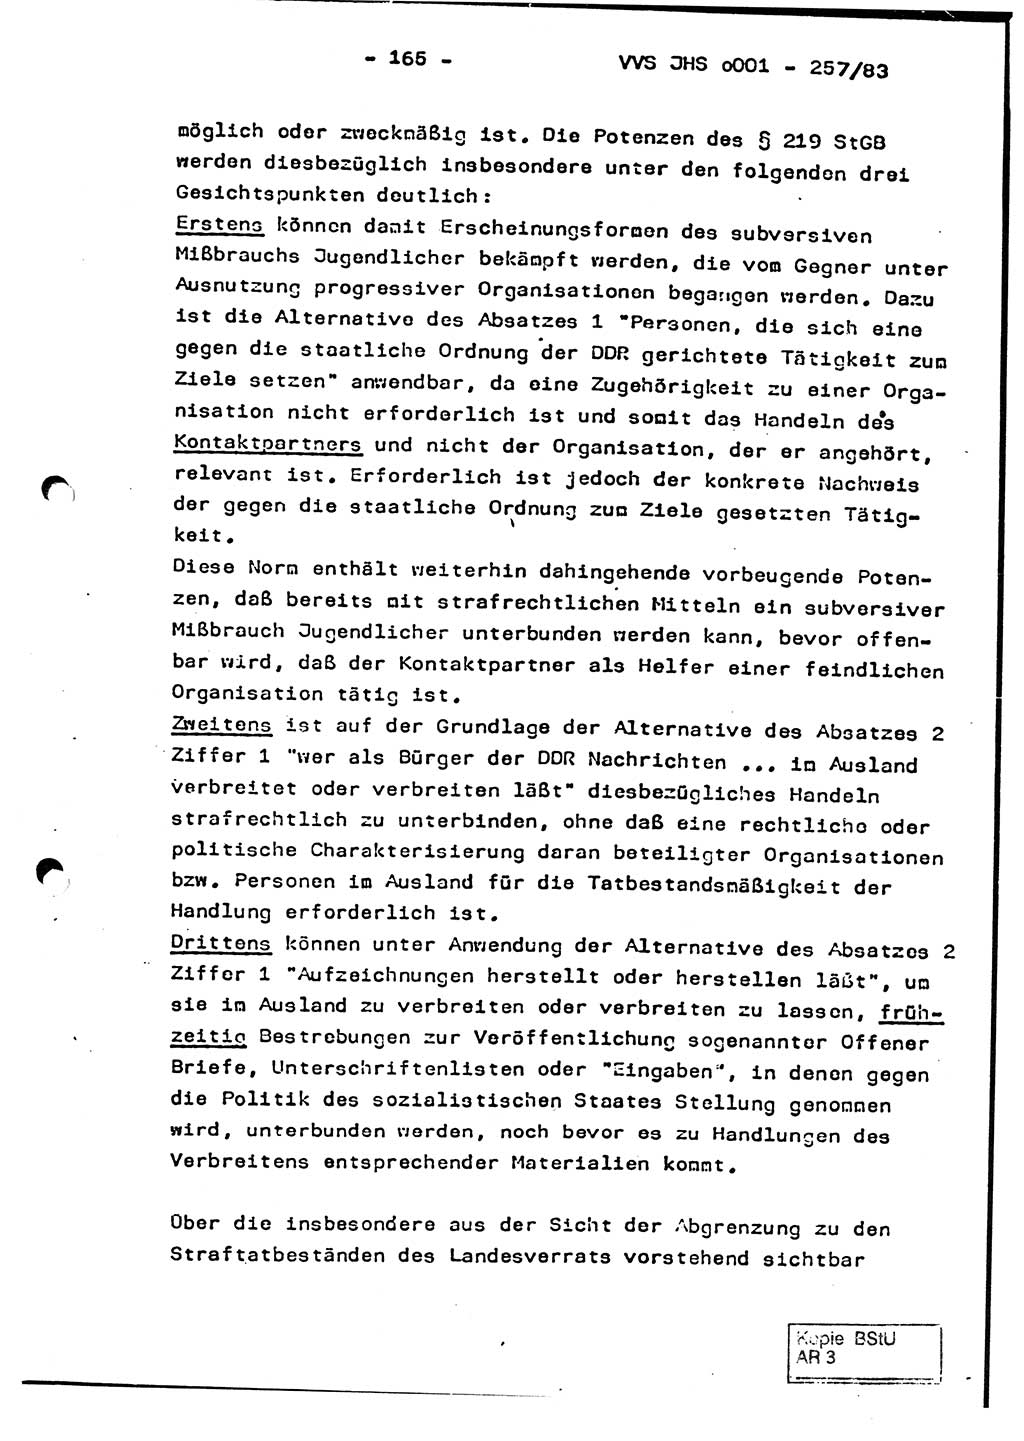 Dissertation, Oberst Helmut Lubas (BV Mdg.), Oberstleutnant Manfred Eschberger (HA IX), Oberleutnant Hans-Jürgen Ludwig (JHS), Ministerium für Staatssicherheit (MfS) [Deutsche Demokratische Republik (DDR)], Juristische Hochschule (JHS), Vertrauliche Verschlußsache (VVS) o001-257/83, Potsdam 1983, Seite 165 (Diss. MfS DDR JHS VVS o001-257/83 1983, S. 165)